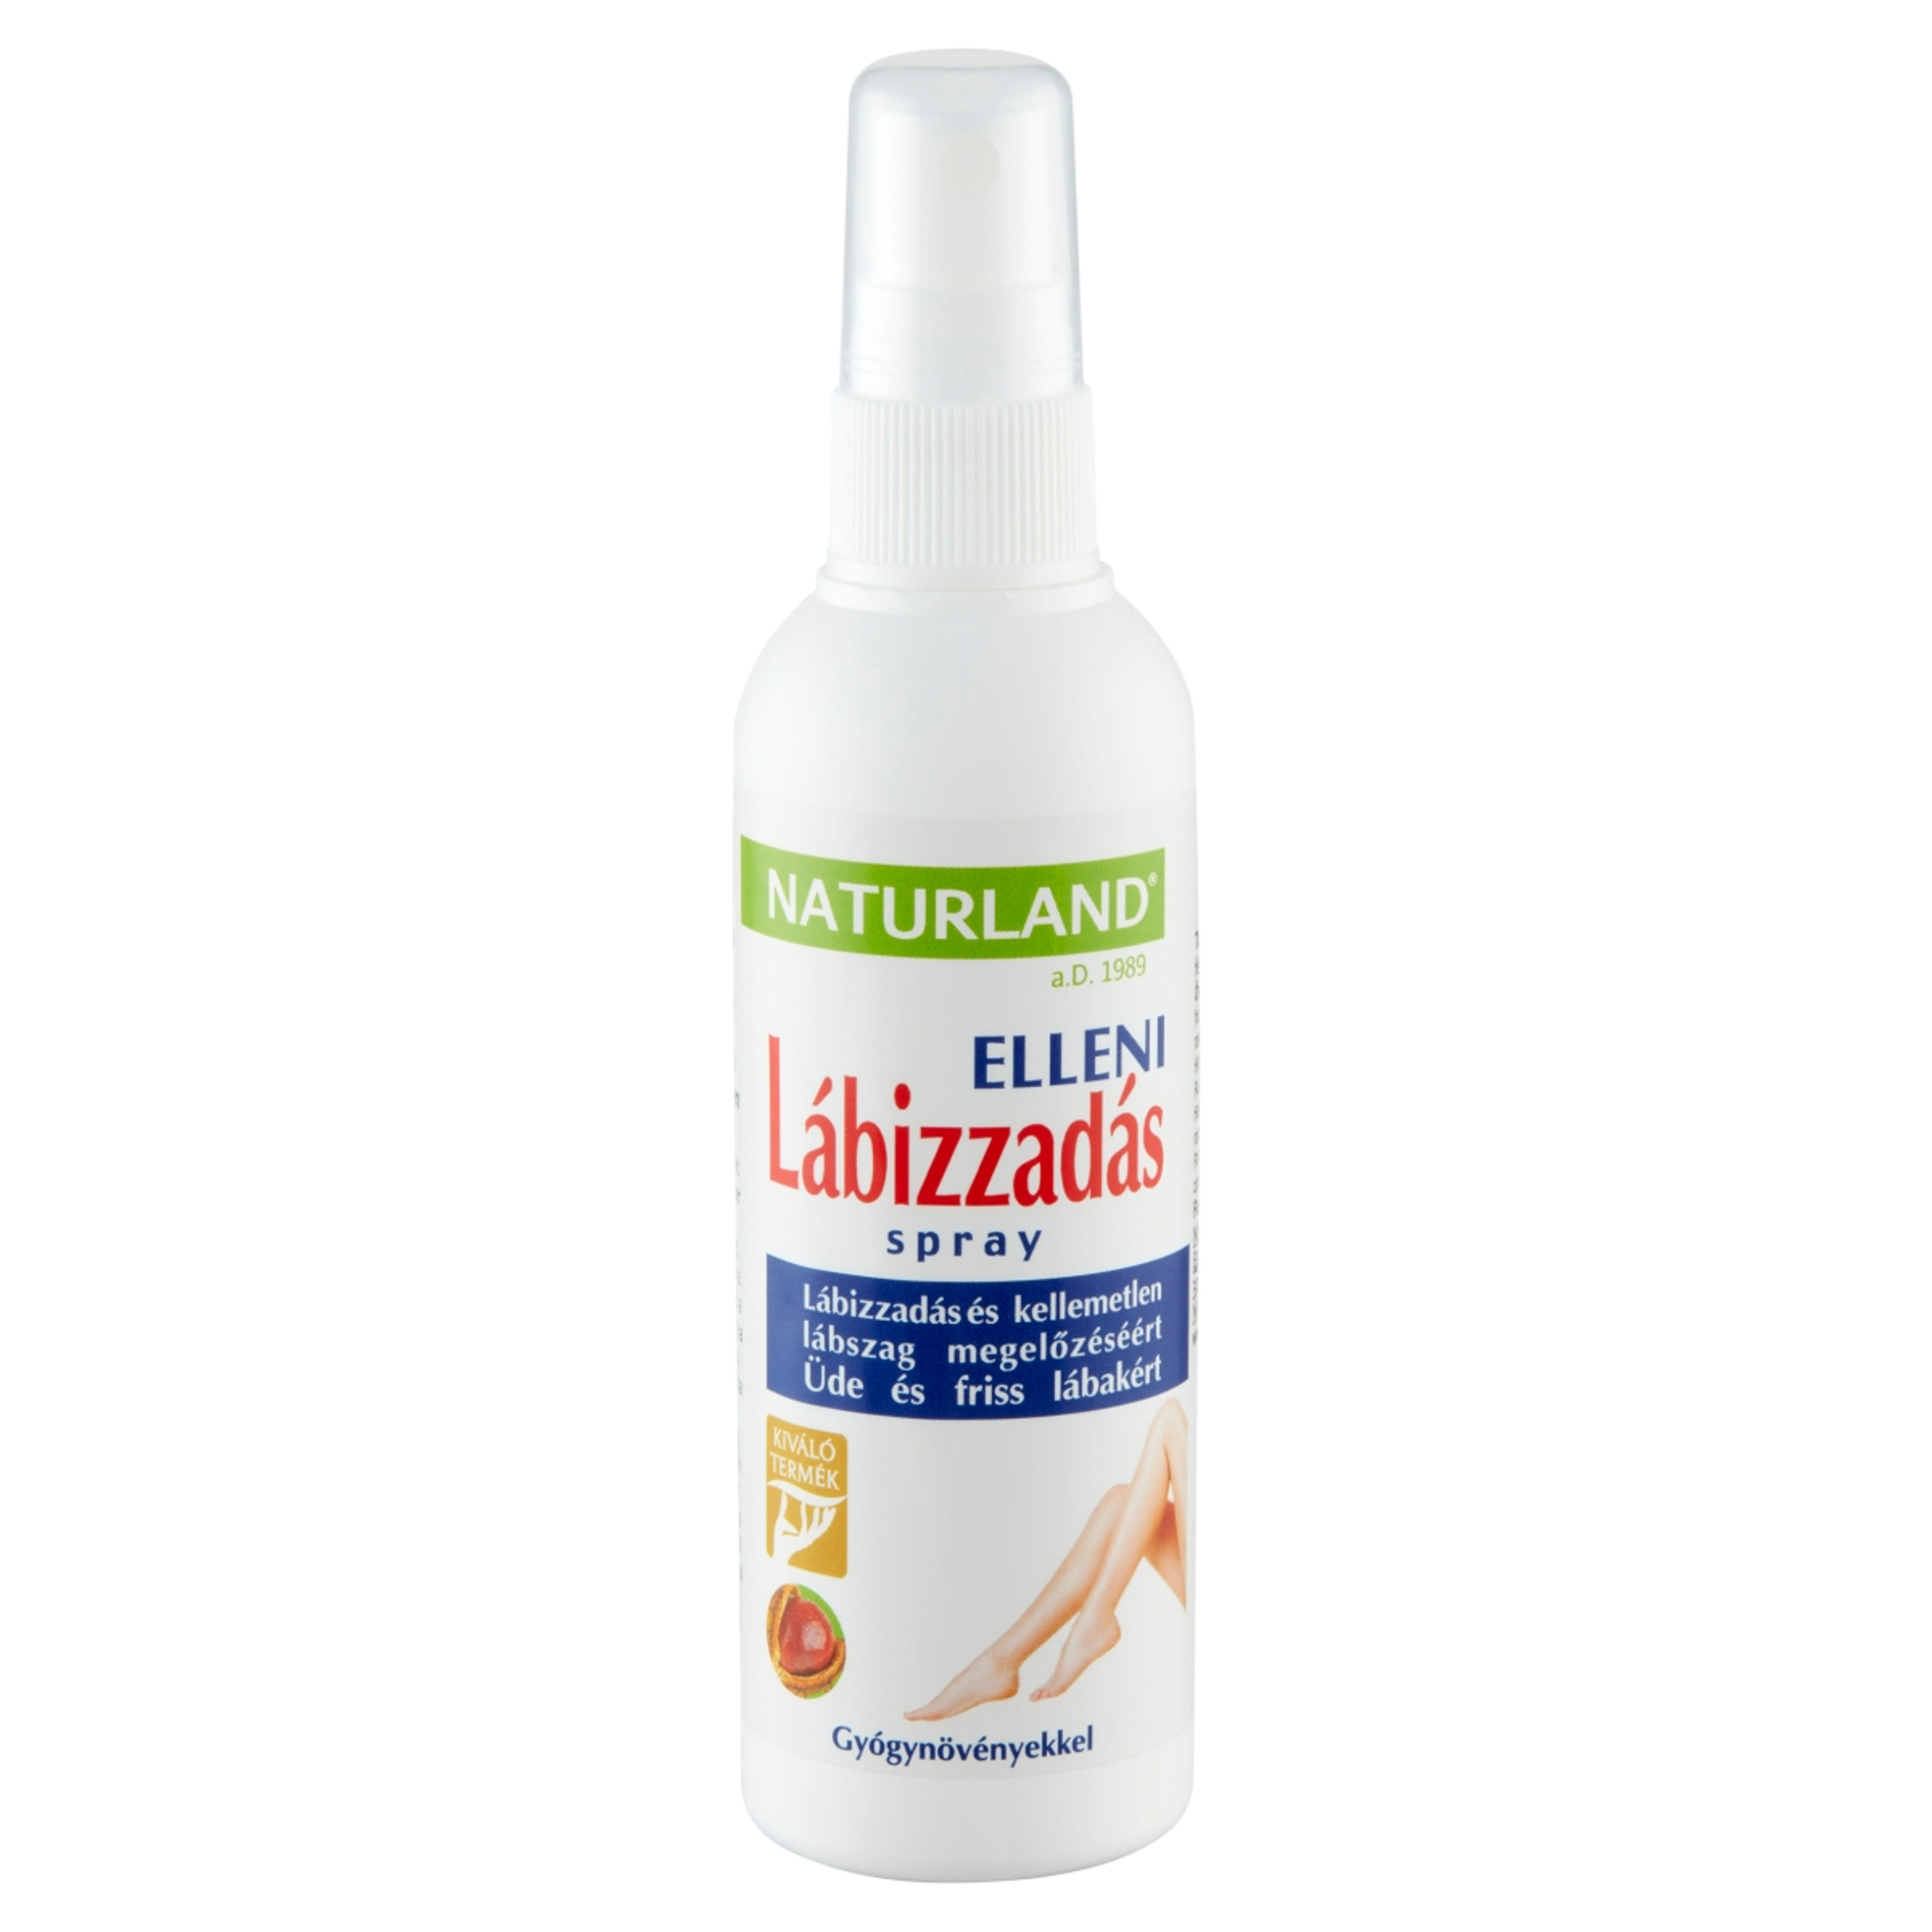 Naturland lábizzadás elleni spray - 100 ml-2